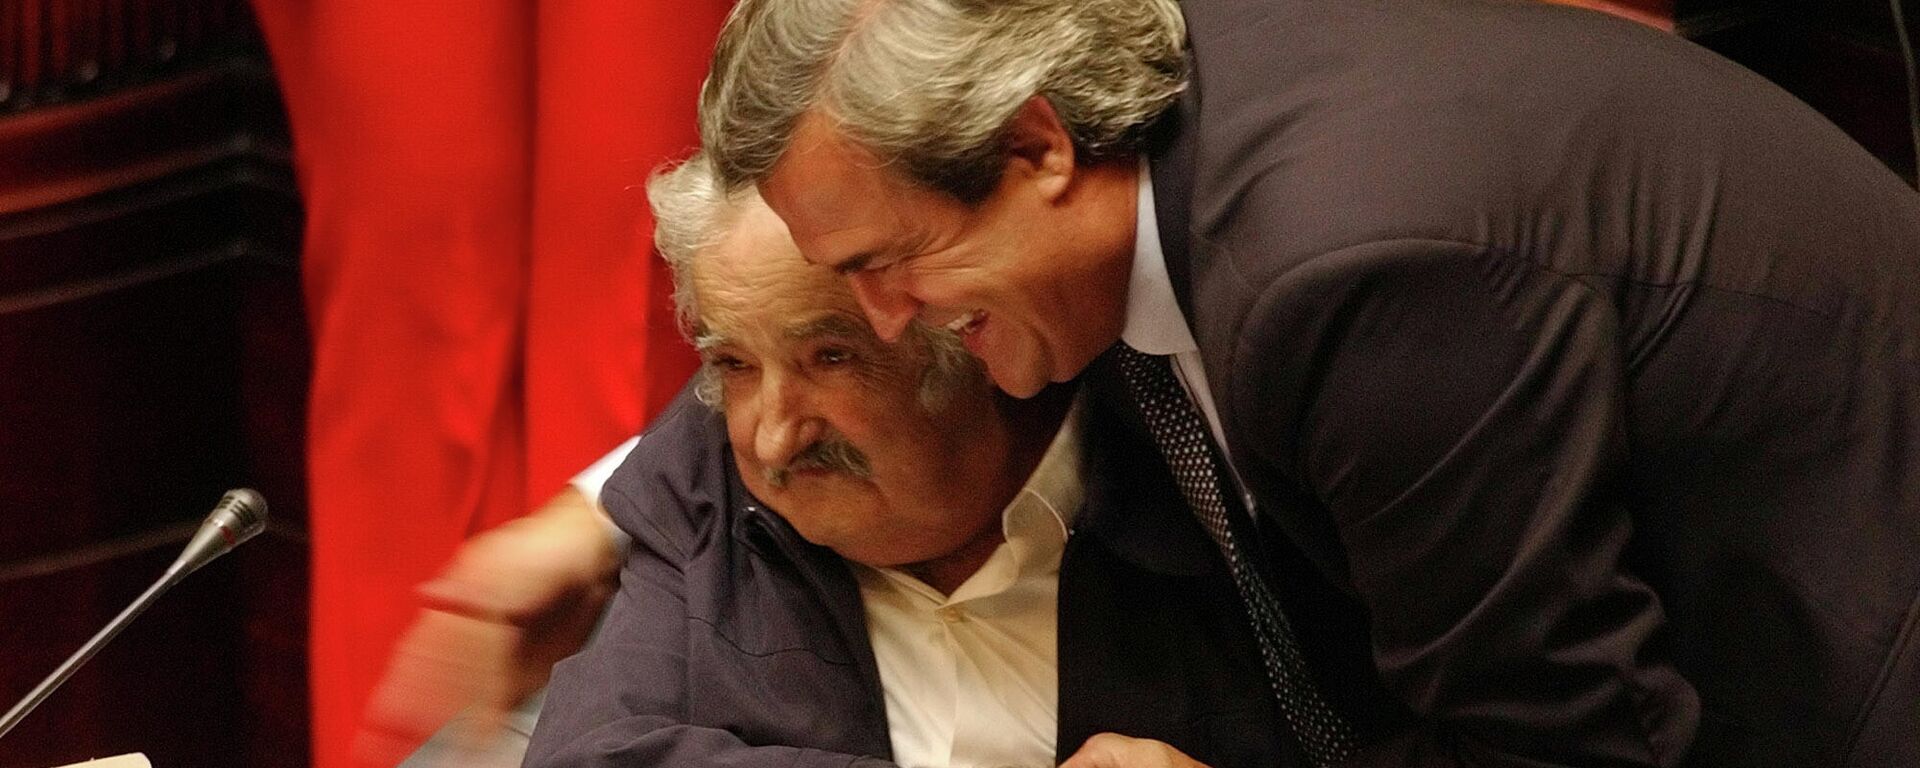 José Mujica y Jorge Larrañaga se abrazan en la primera sesión del Senado en 2005 - Sputnik Mundo, 1920, 24.05.2021